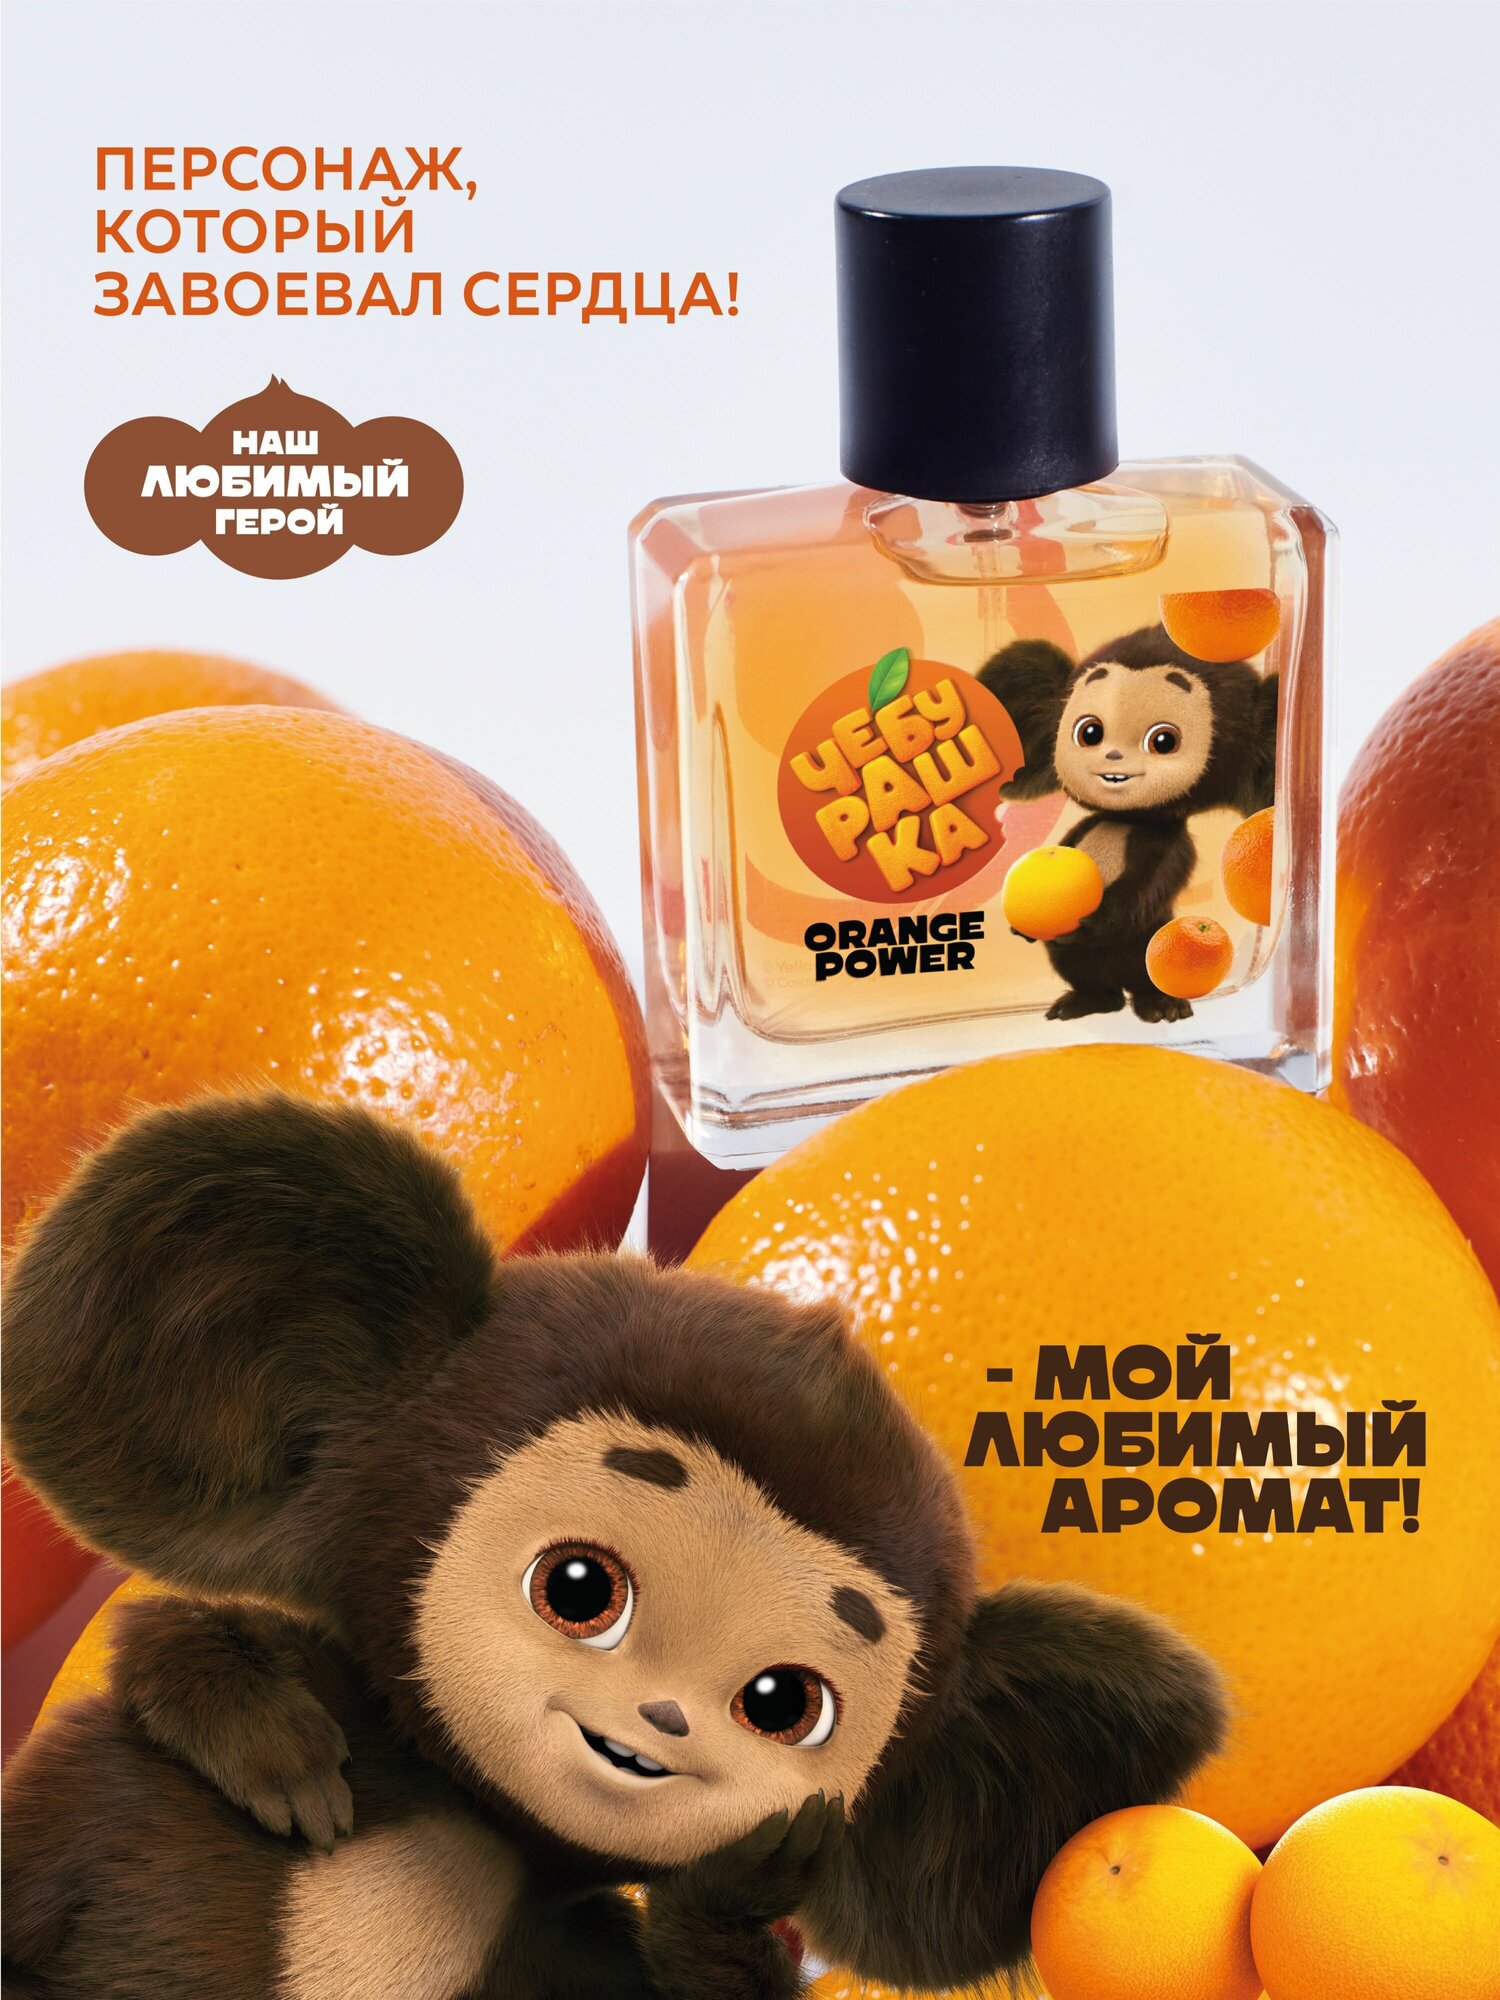 Туалетная вода Чебурашка "Orange Power" 50 мл детские духи парфюм для детей